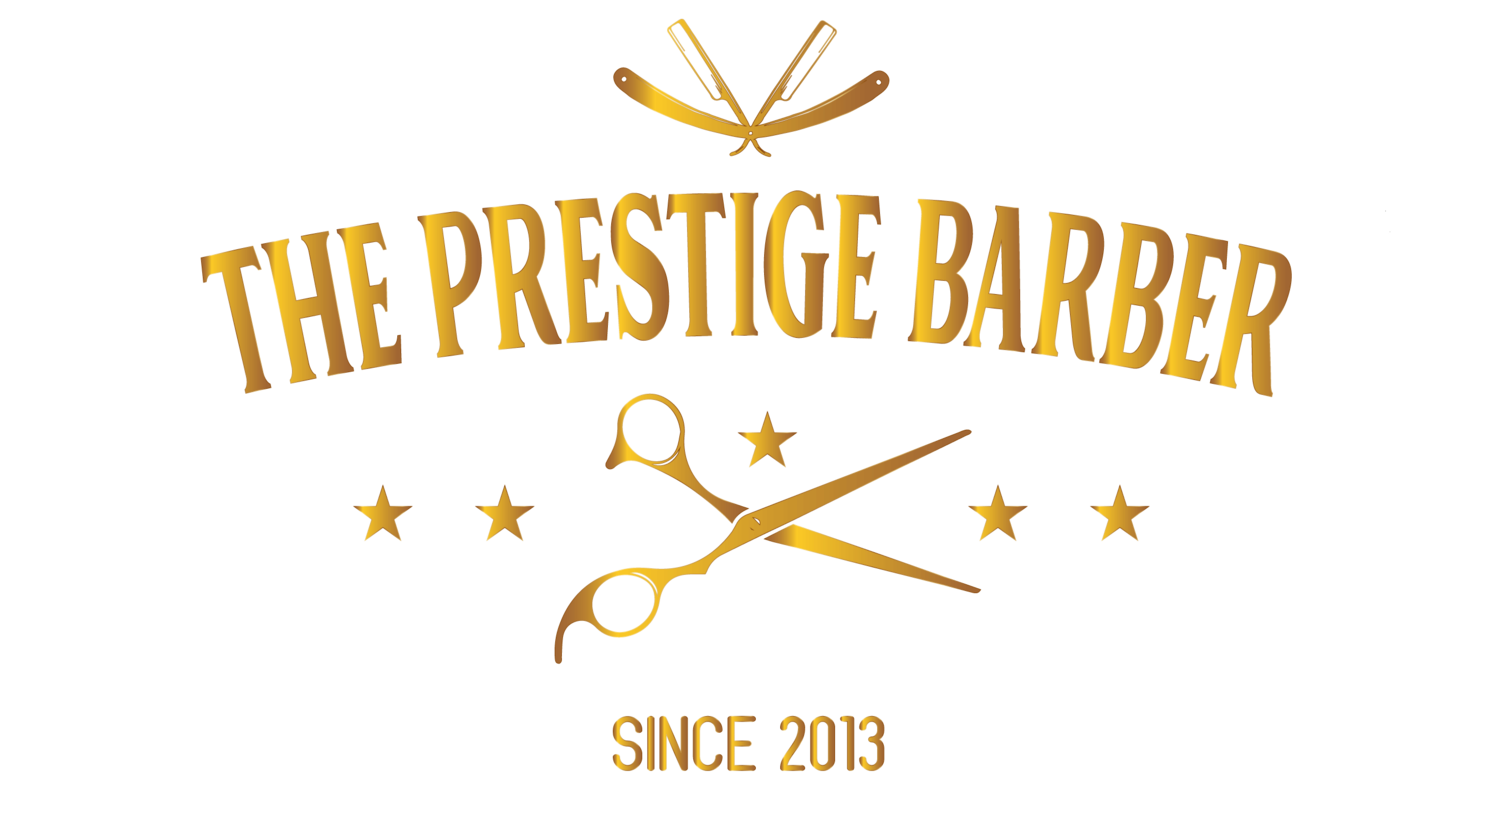 The Prestige Barber